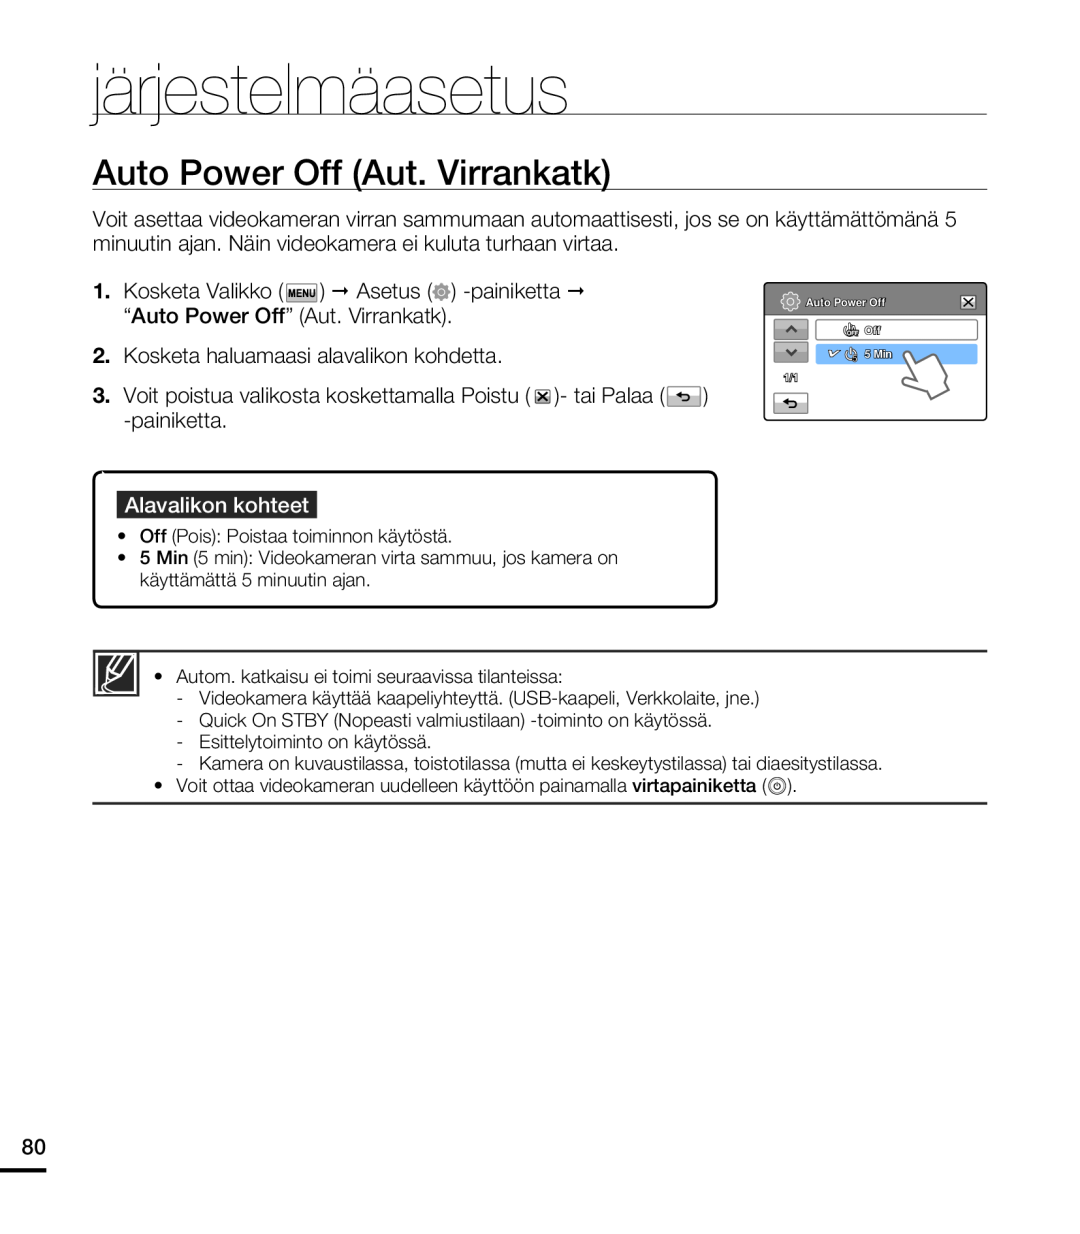 Samsung HMX-T10WP/EDC manual Auto Power Off Aut. Virrankatk, järjestelmäasetus, Kosketa haluamaasi alavalikon kohdetta 